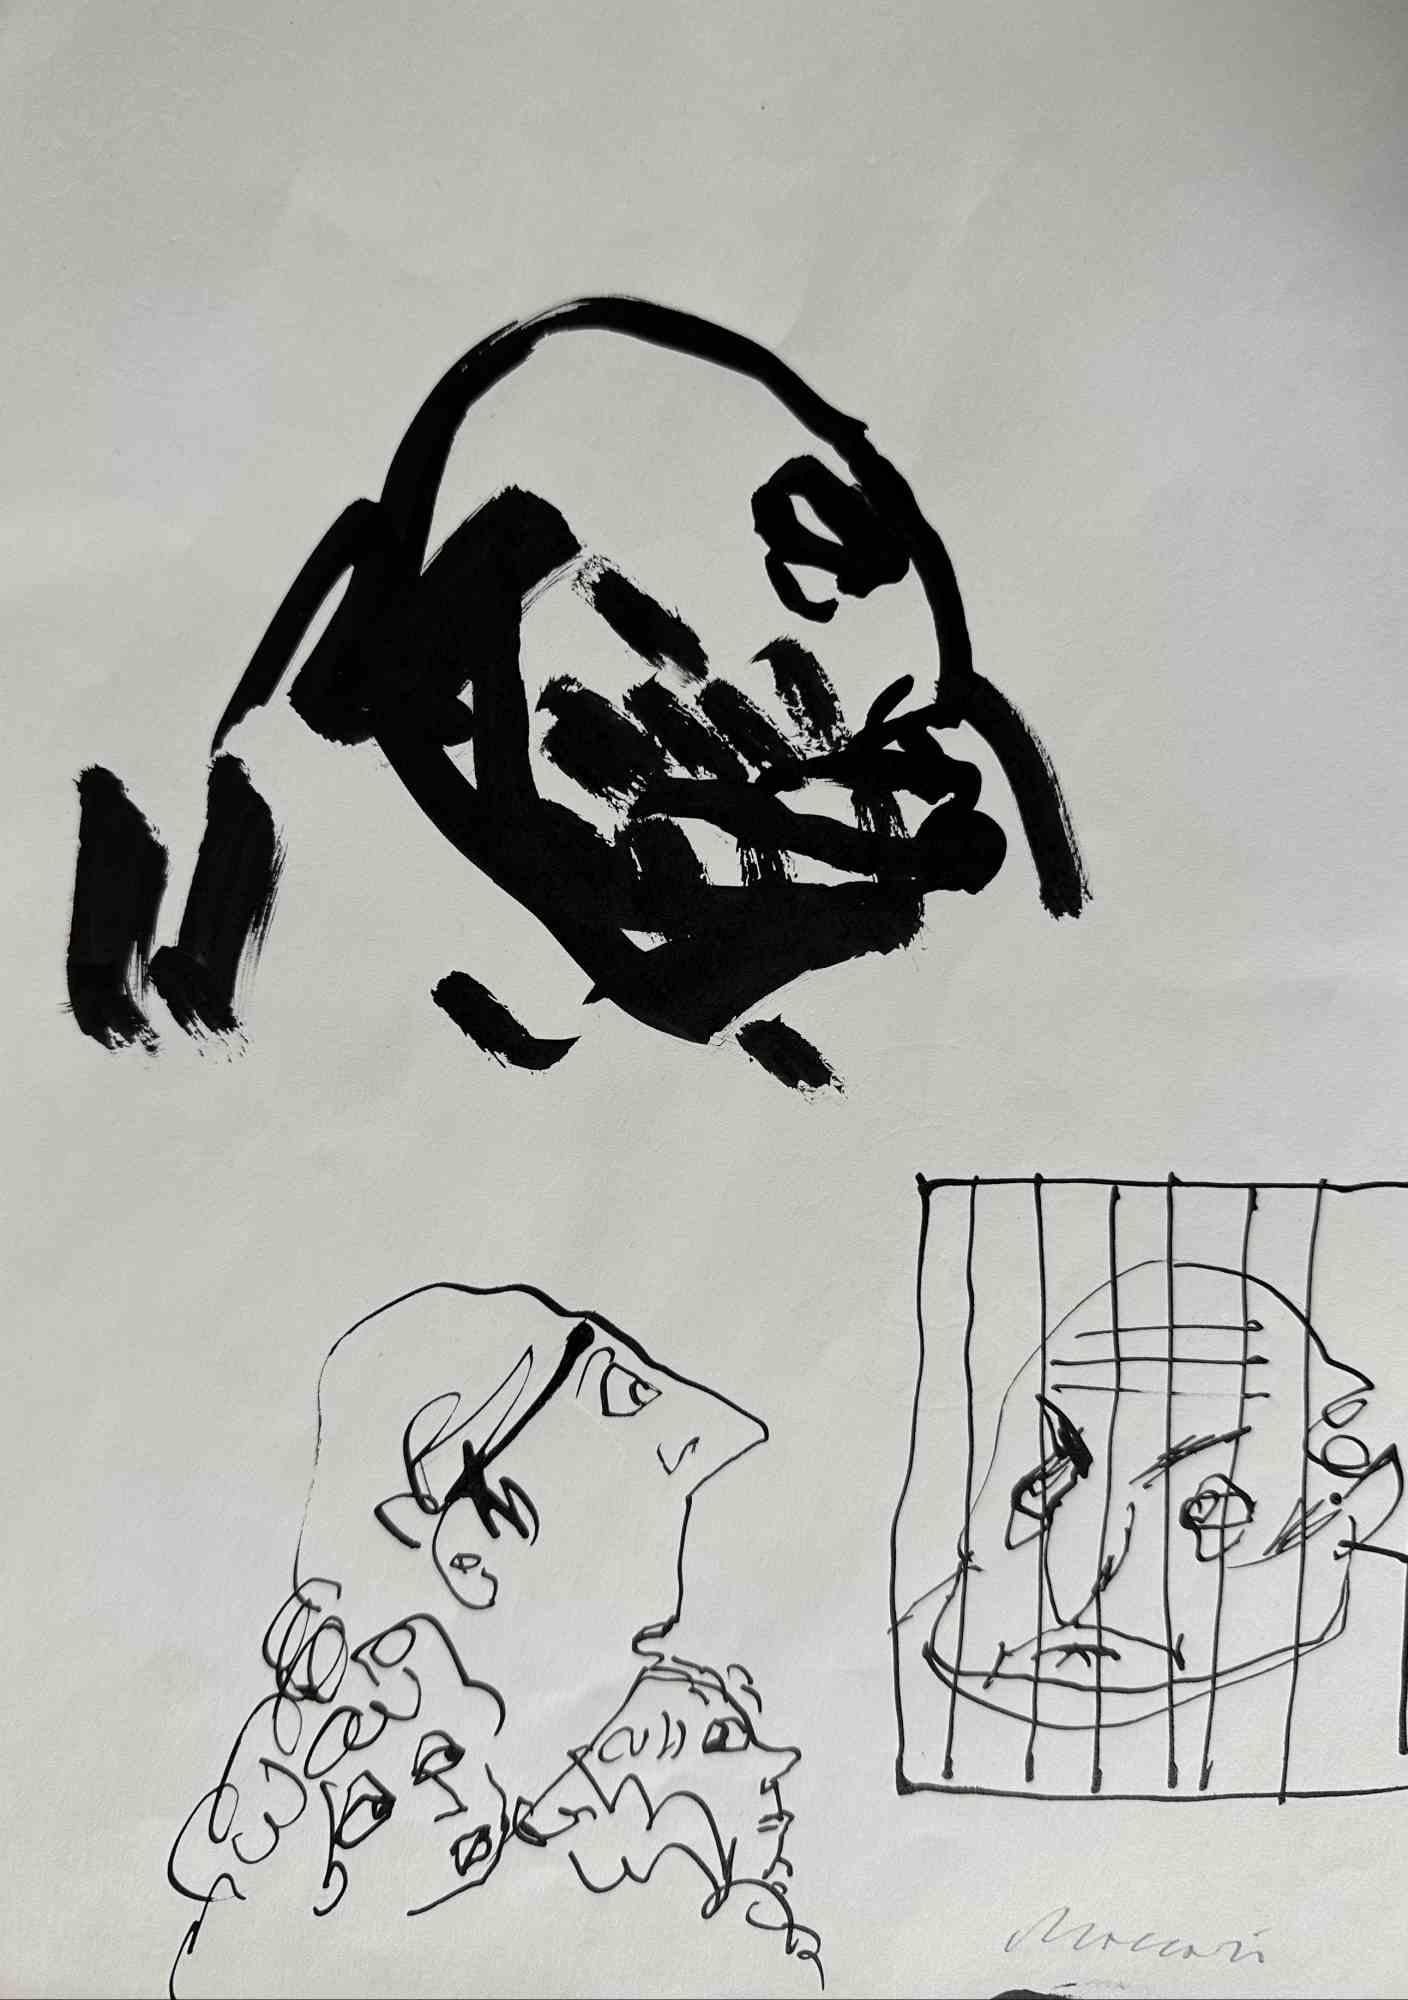 Der Häftling ist ein  China-Tusche Zeichnung und  Aquarell realisiert von Mino Maccari  (1924-1989) in den 1960er Jahren.

Handsigniert auf der Unterseite.

Gute Bedingungen.

Mino Maccari (Siena, 1924-Rom, 16. Juni 1989) war ein italienischer